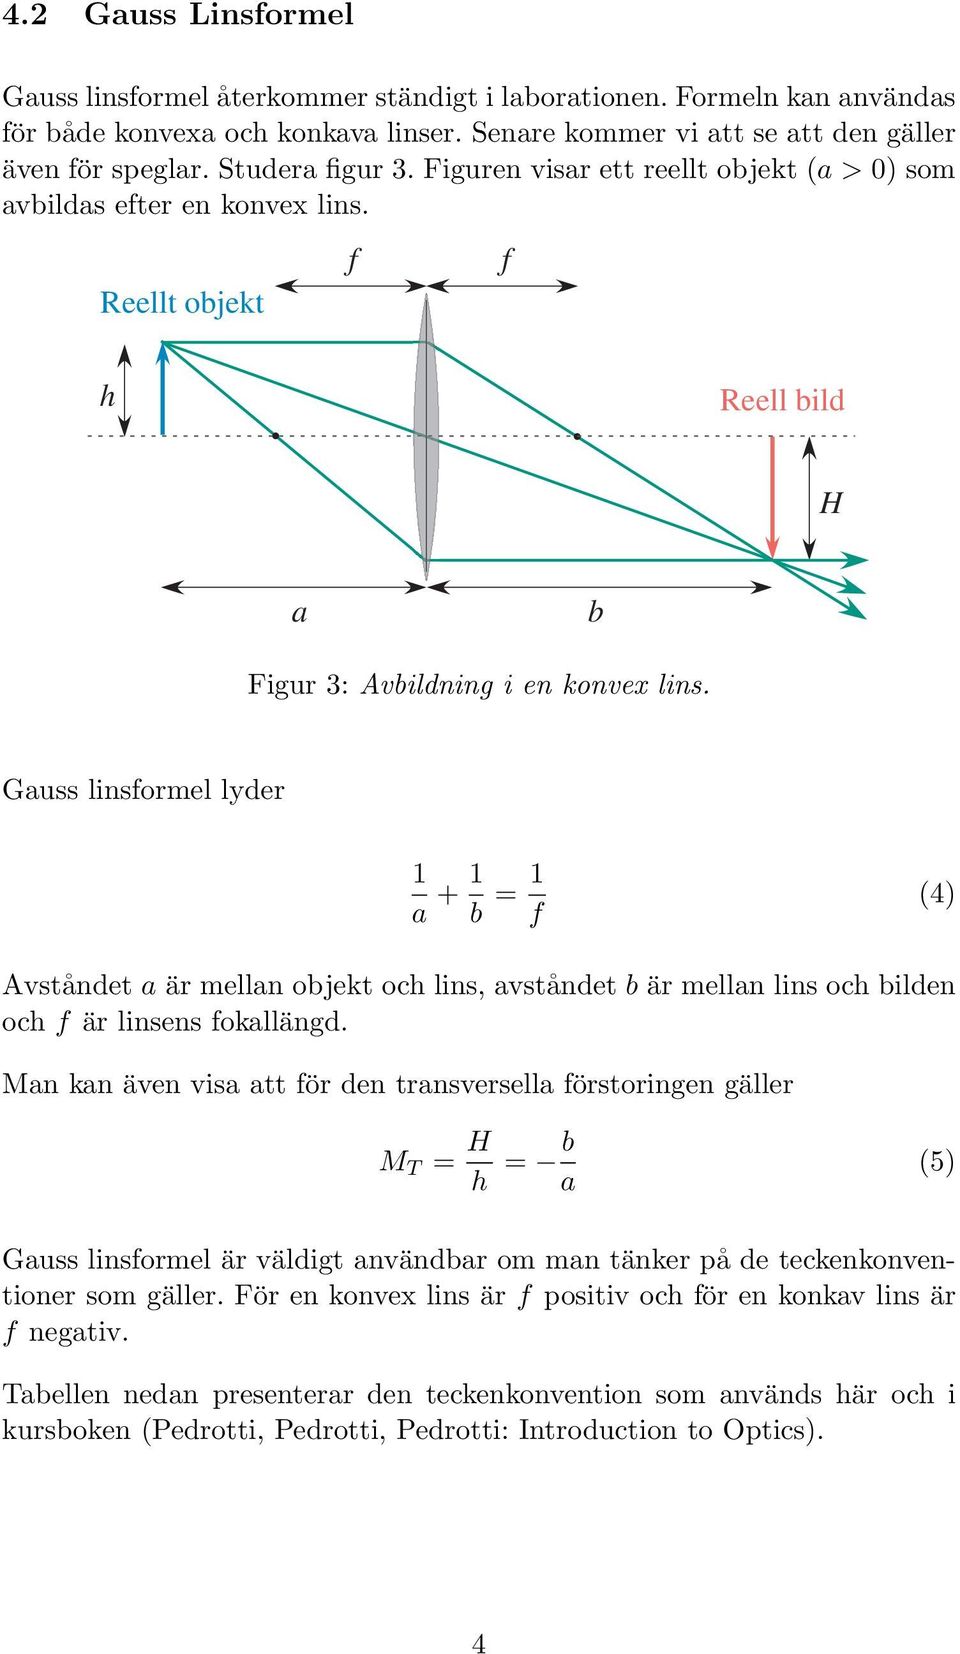 Gauss linsformel lyder 1 a + 1 b = 1 f (4) Avståndet a är mellan objekt och lins, avståndet b är mellan lins och bilden och f är linsens fokallängd.